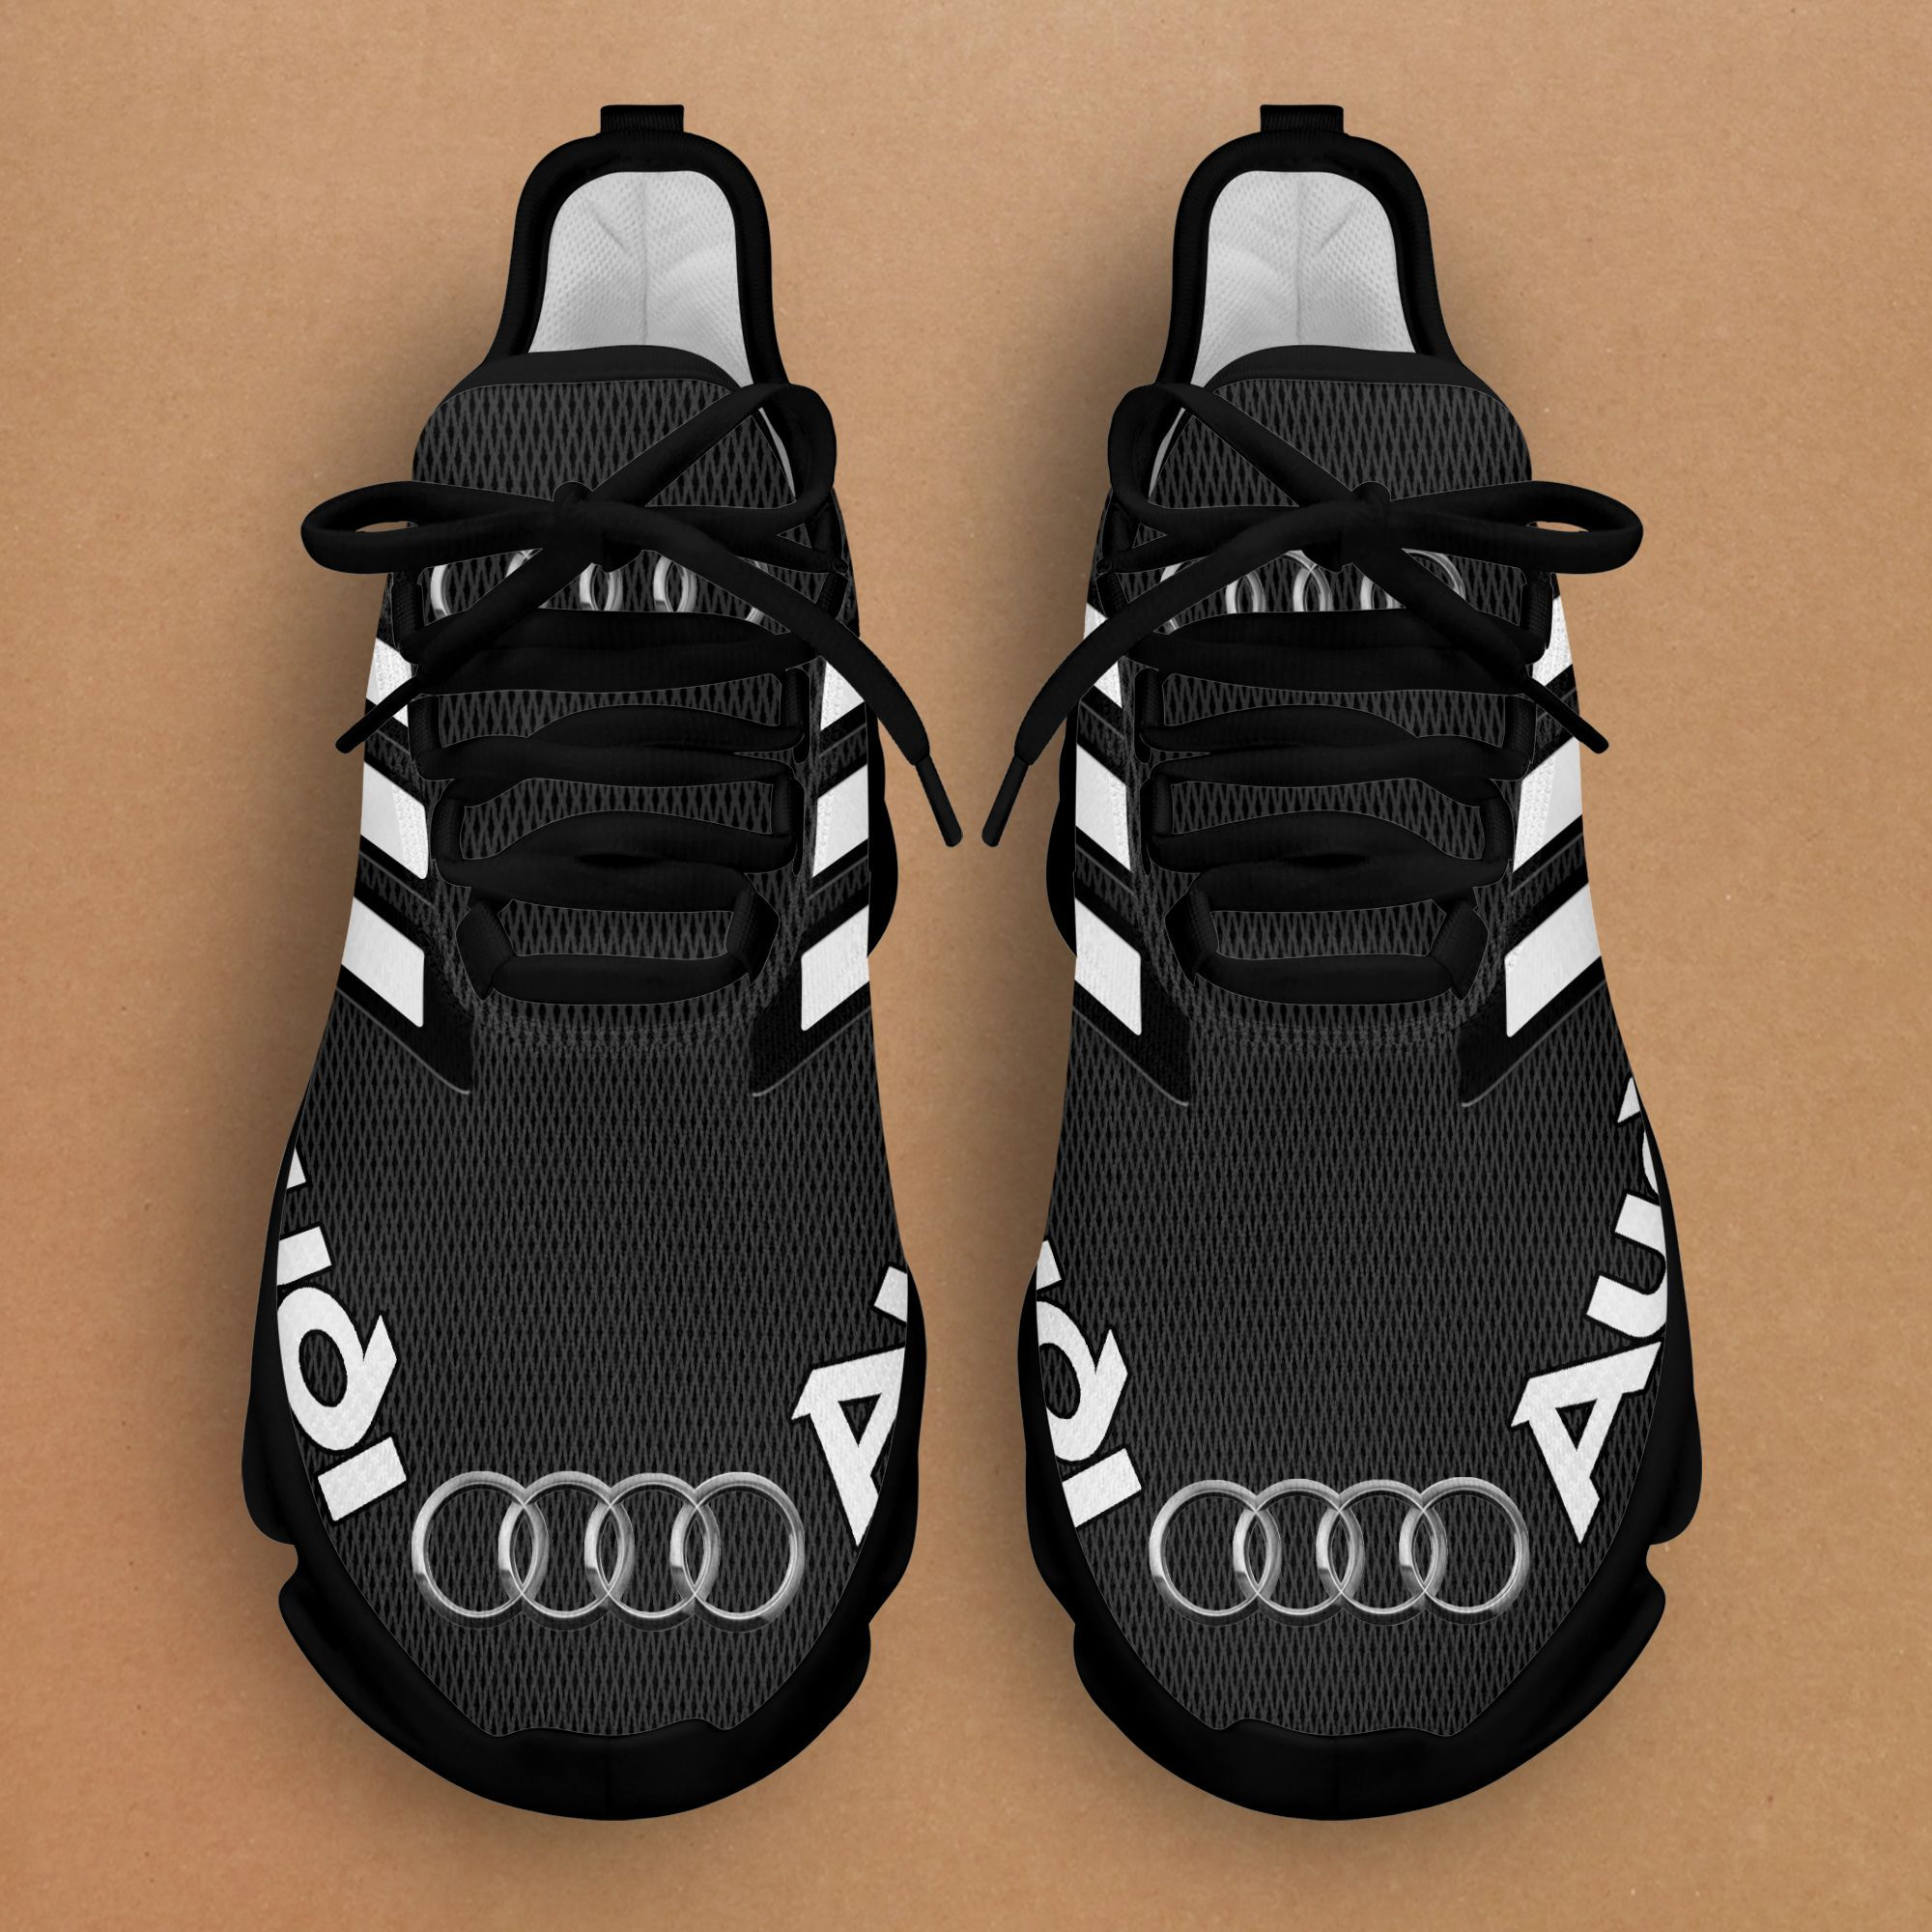 Audi Schuhe Sneaker